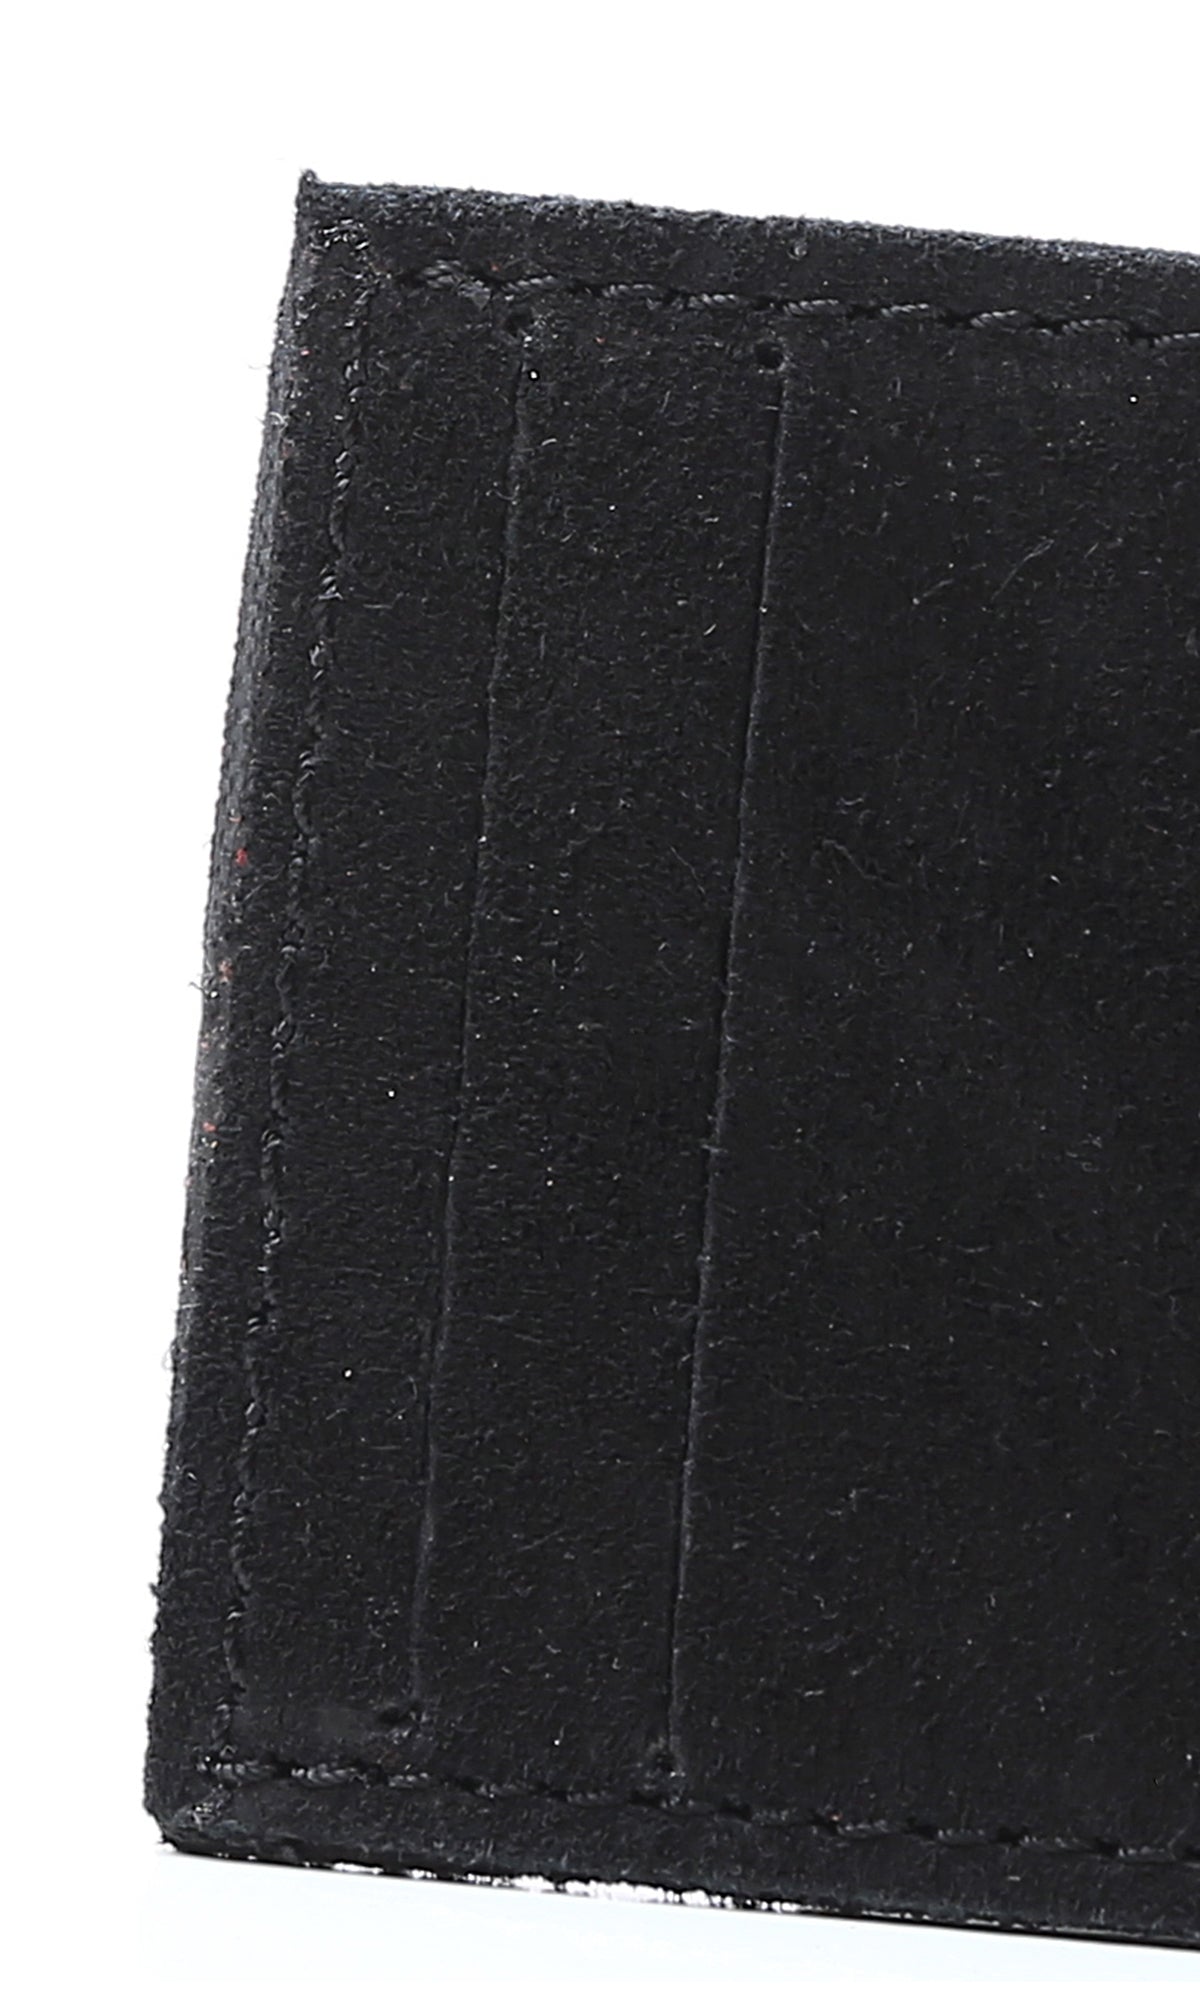 O174864 Solid Nubuck Black Cards Holder